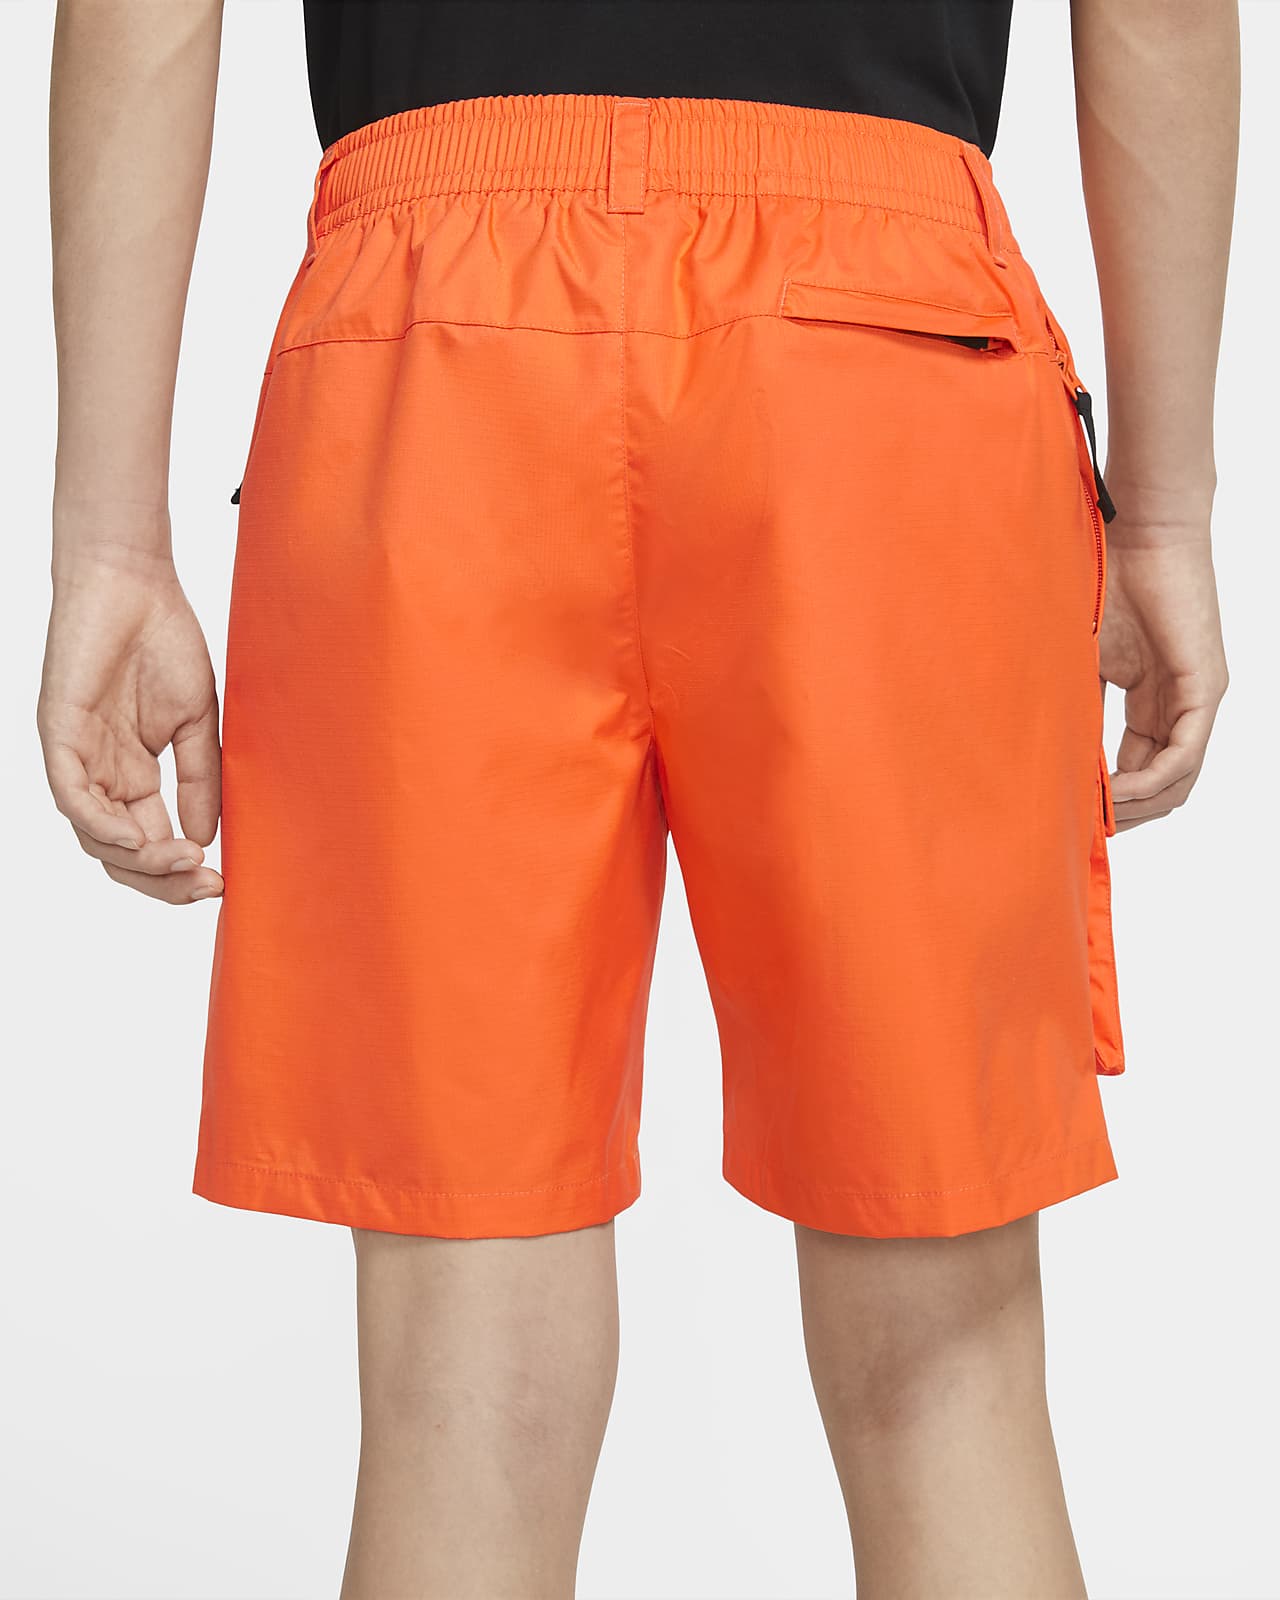 orange nike shorts mens